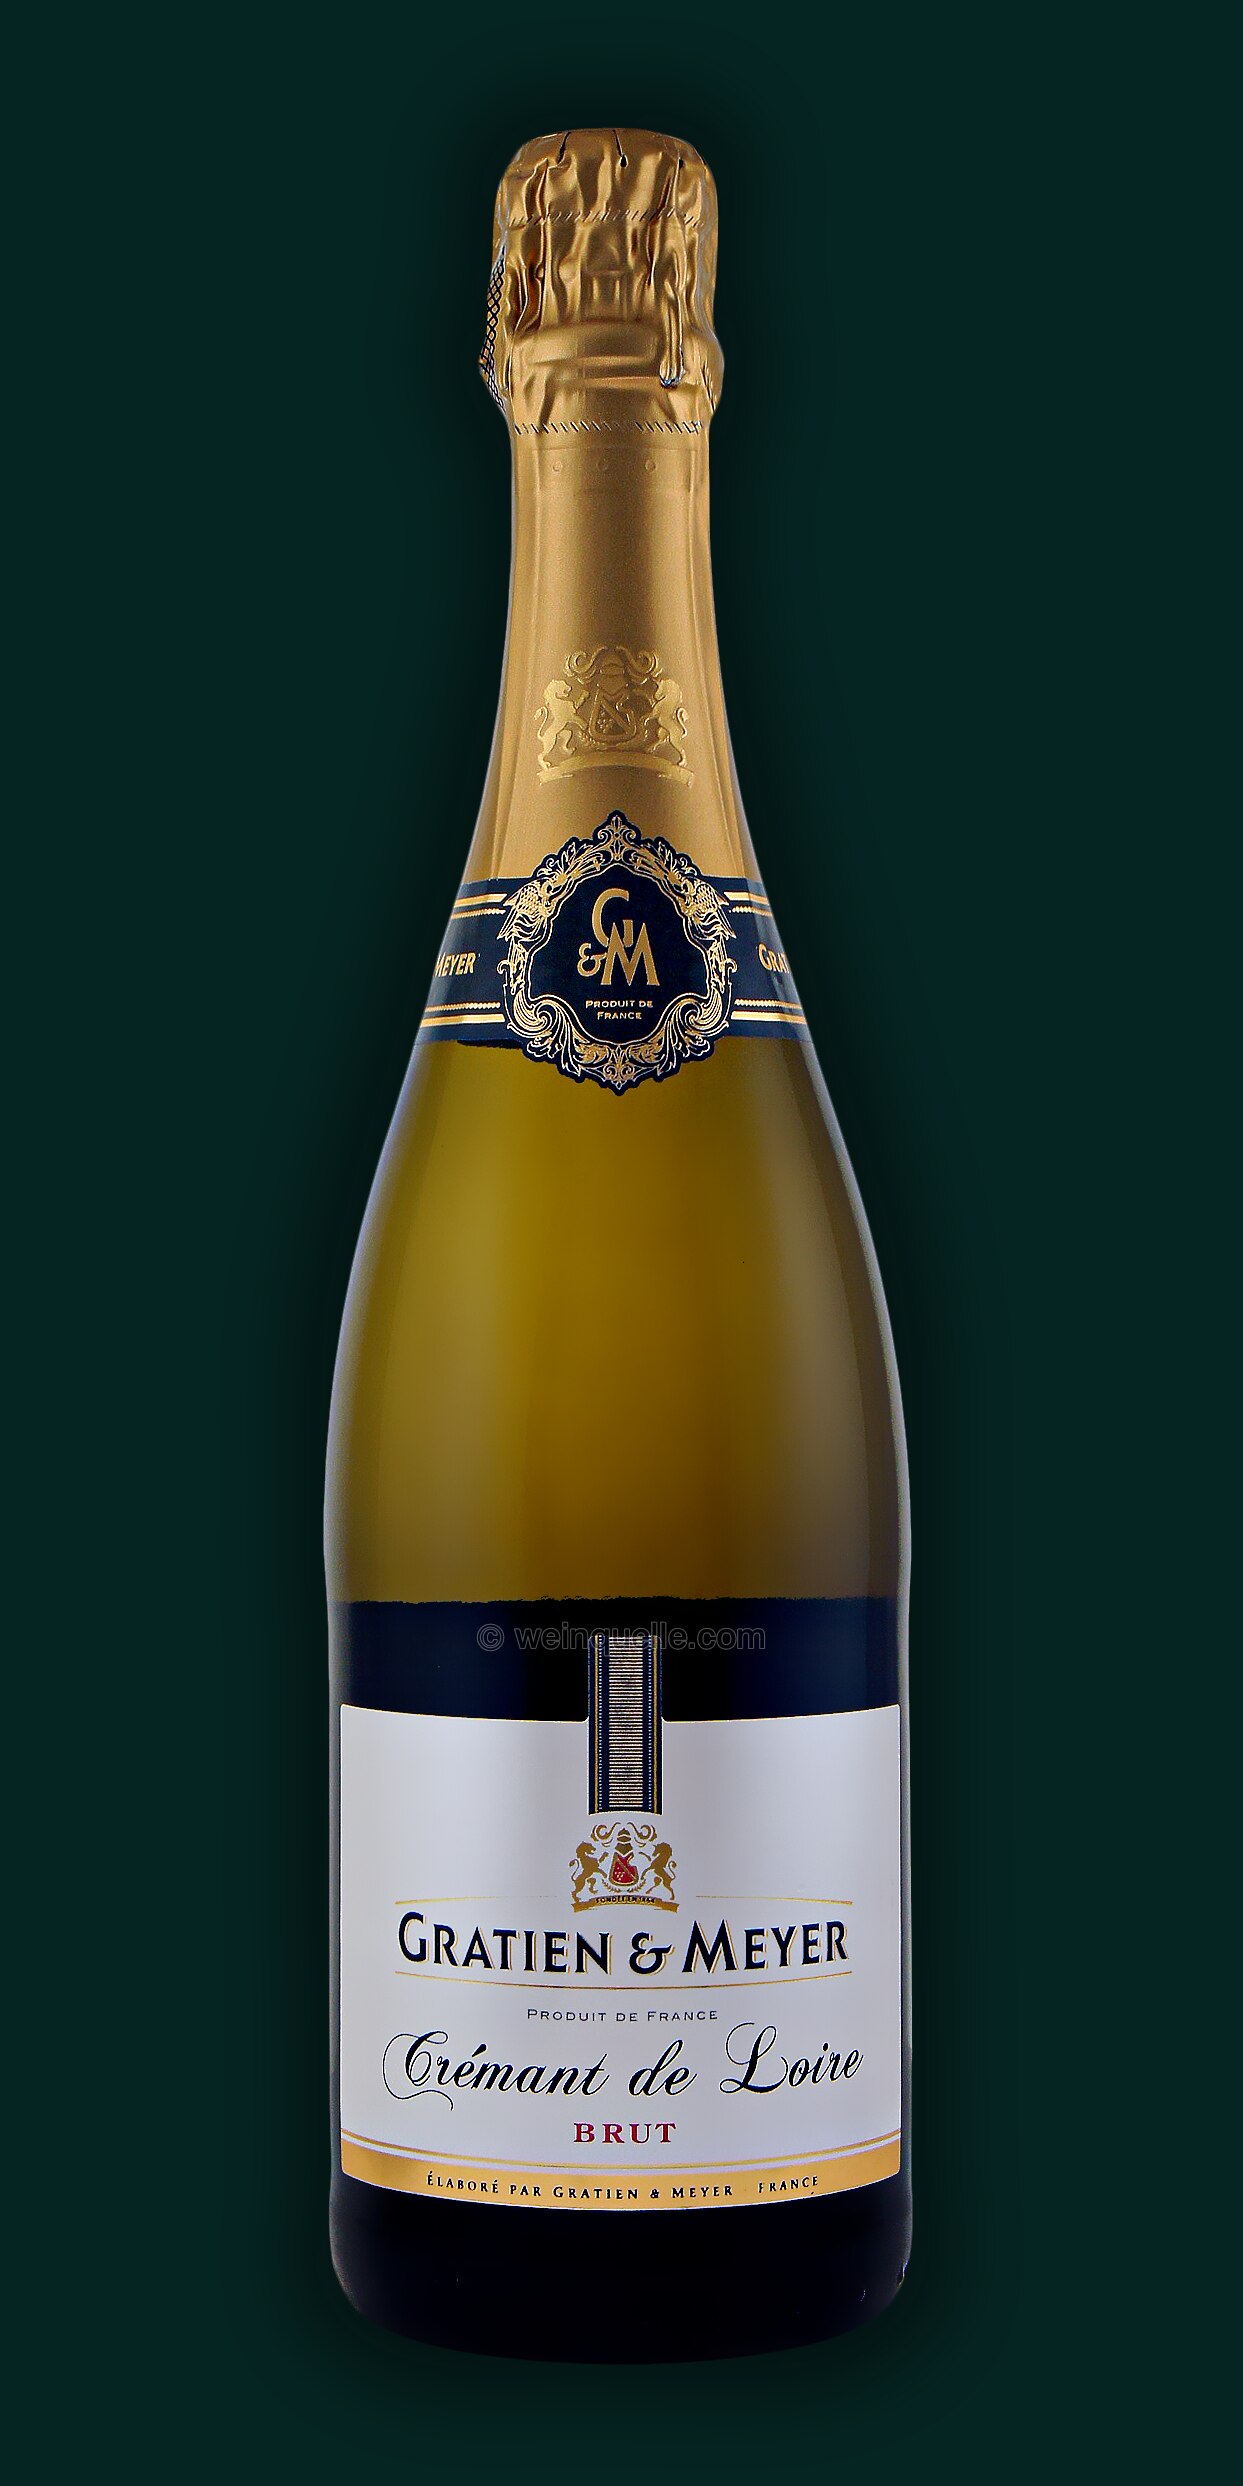 Weinquelle Loire Crémant de & Lühmann € - Brut, Gratien 10,90 Meyer